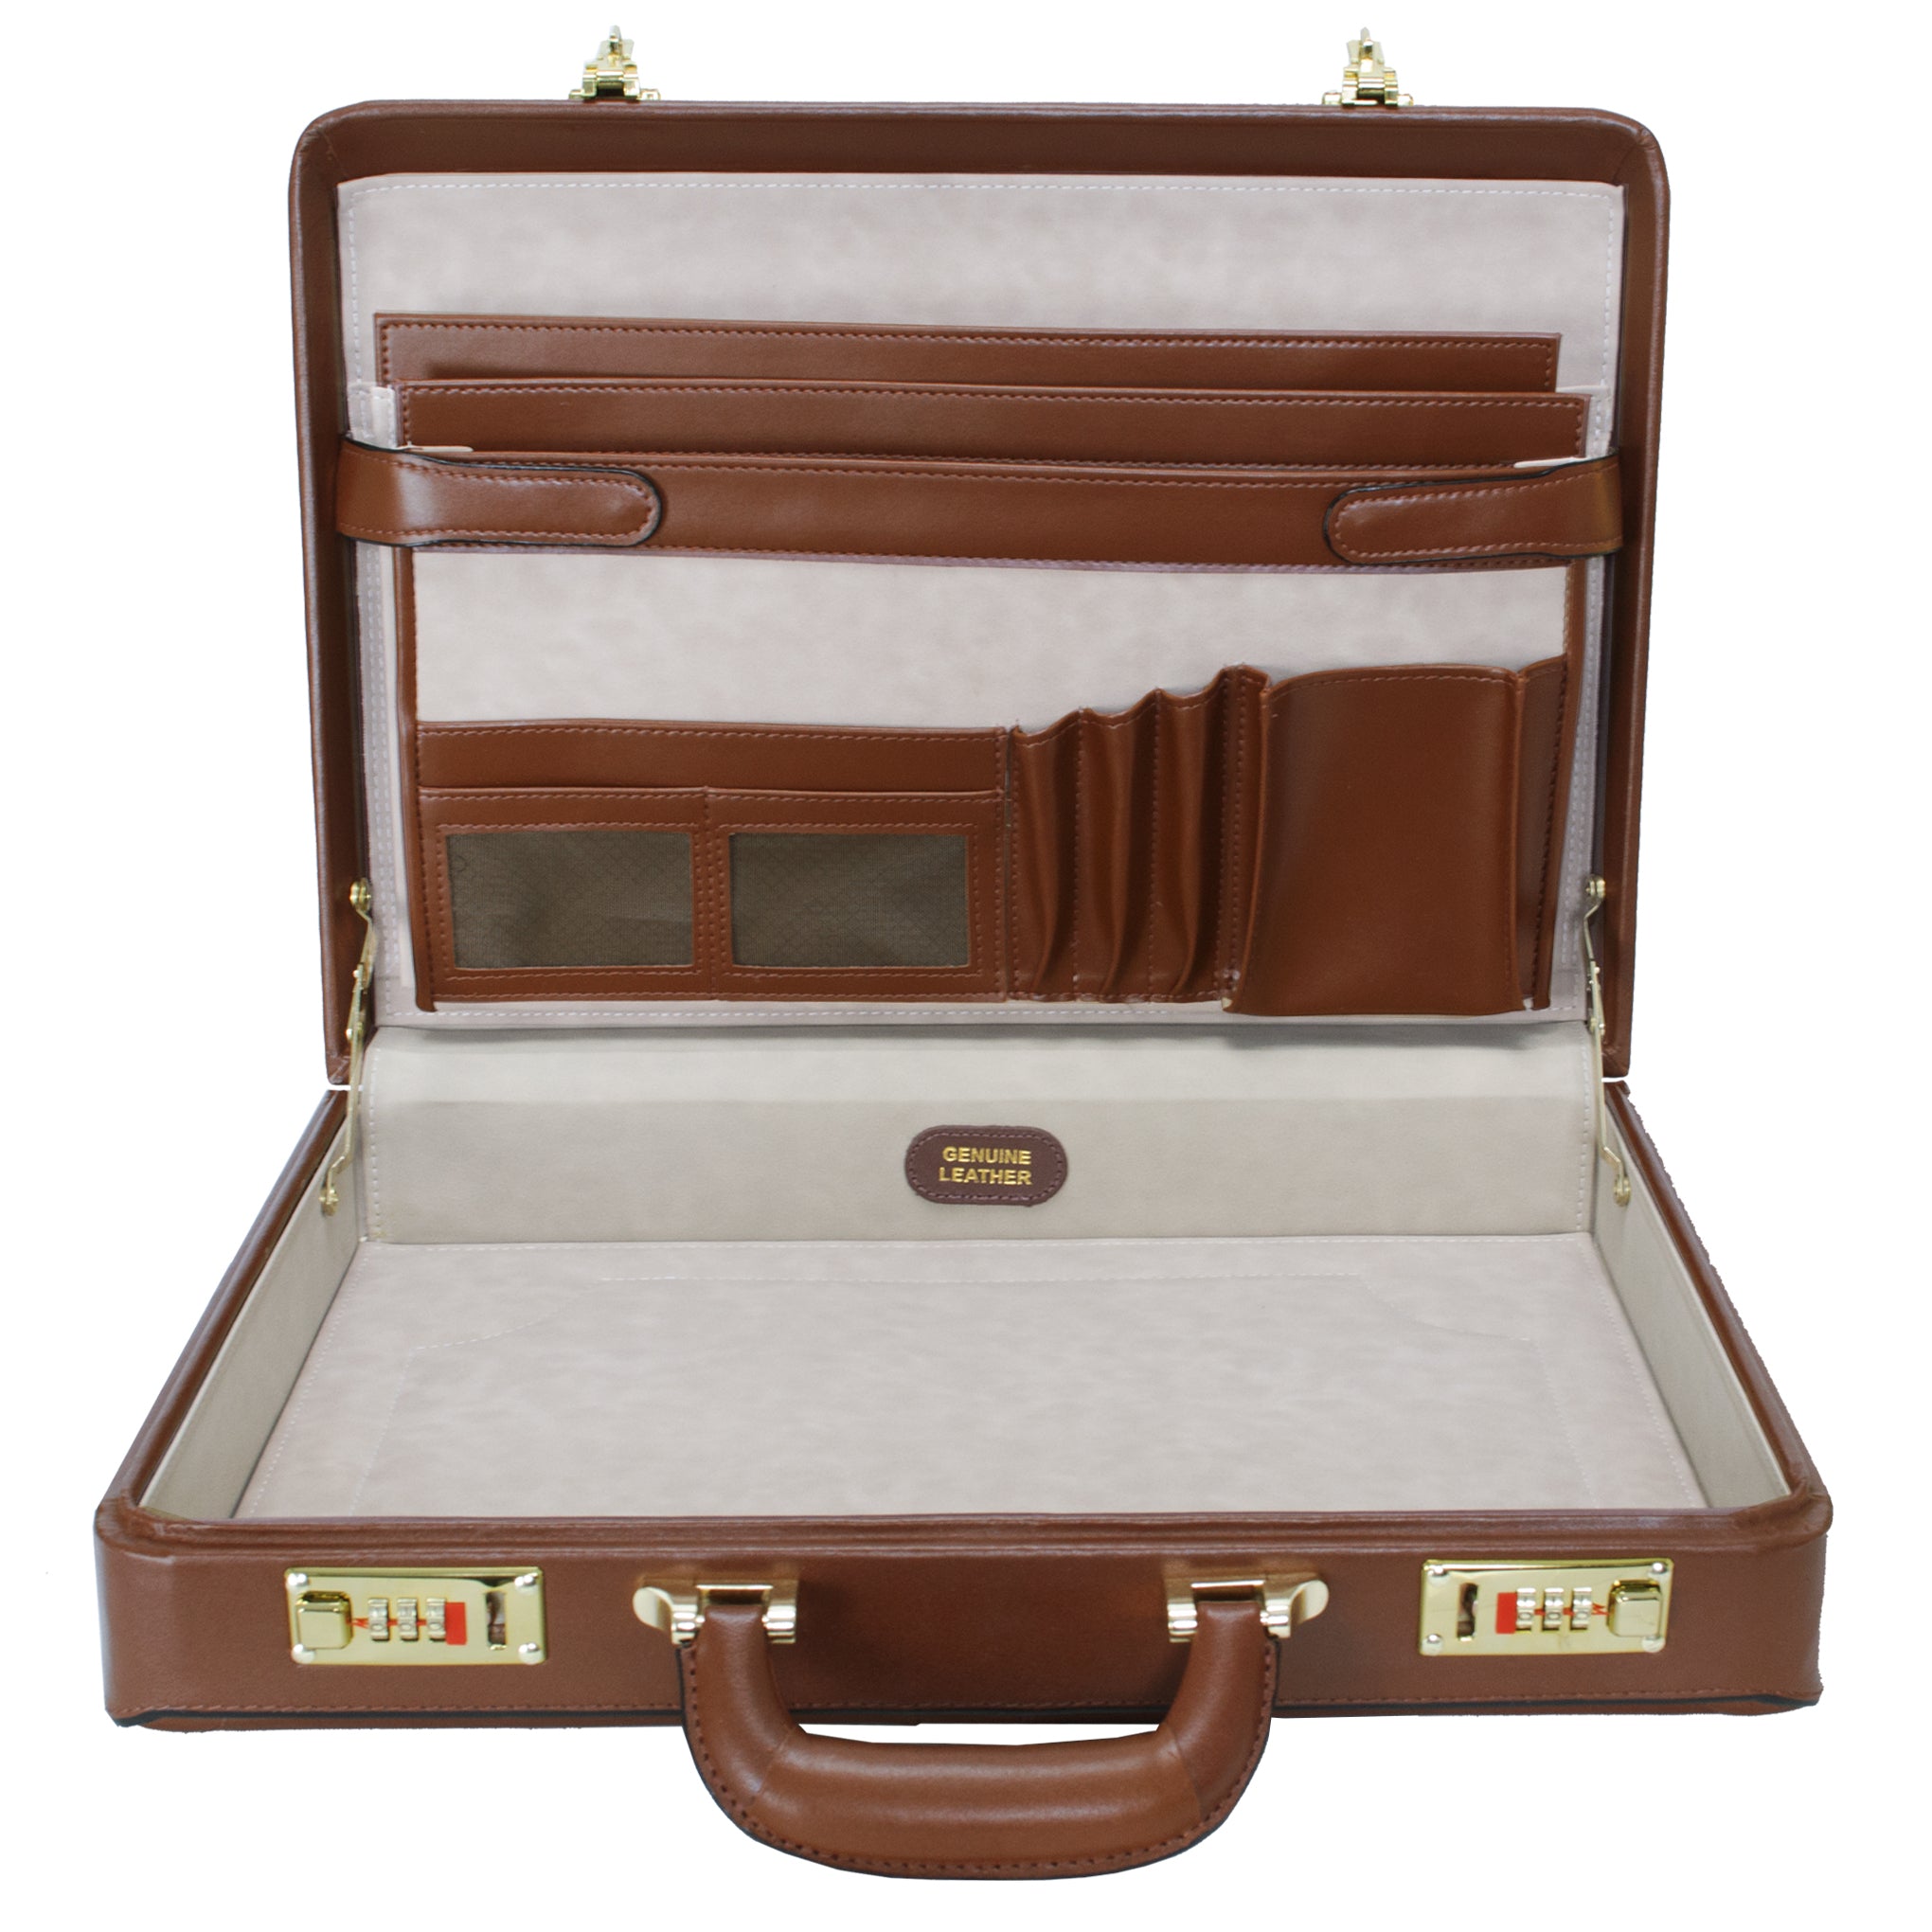 McKlein LAWSON Leather 3.5" Attaché Briefcase